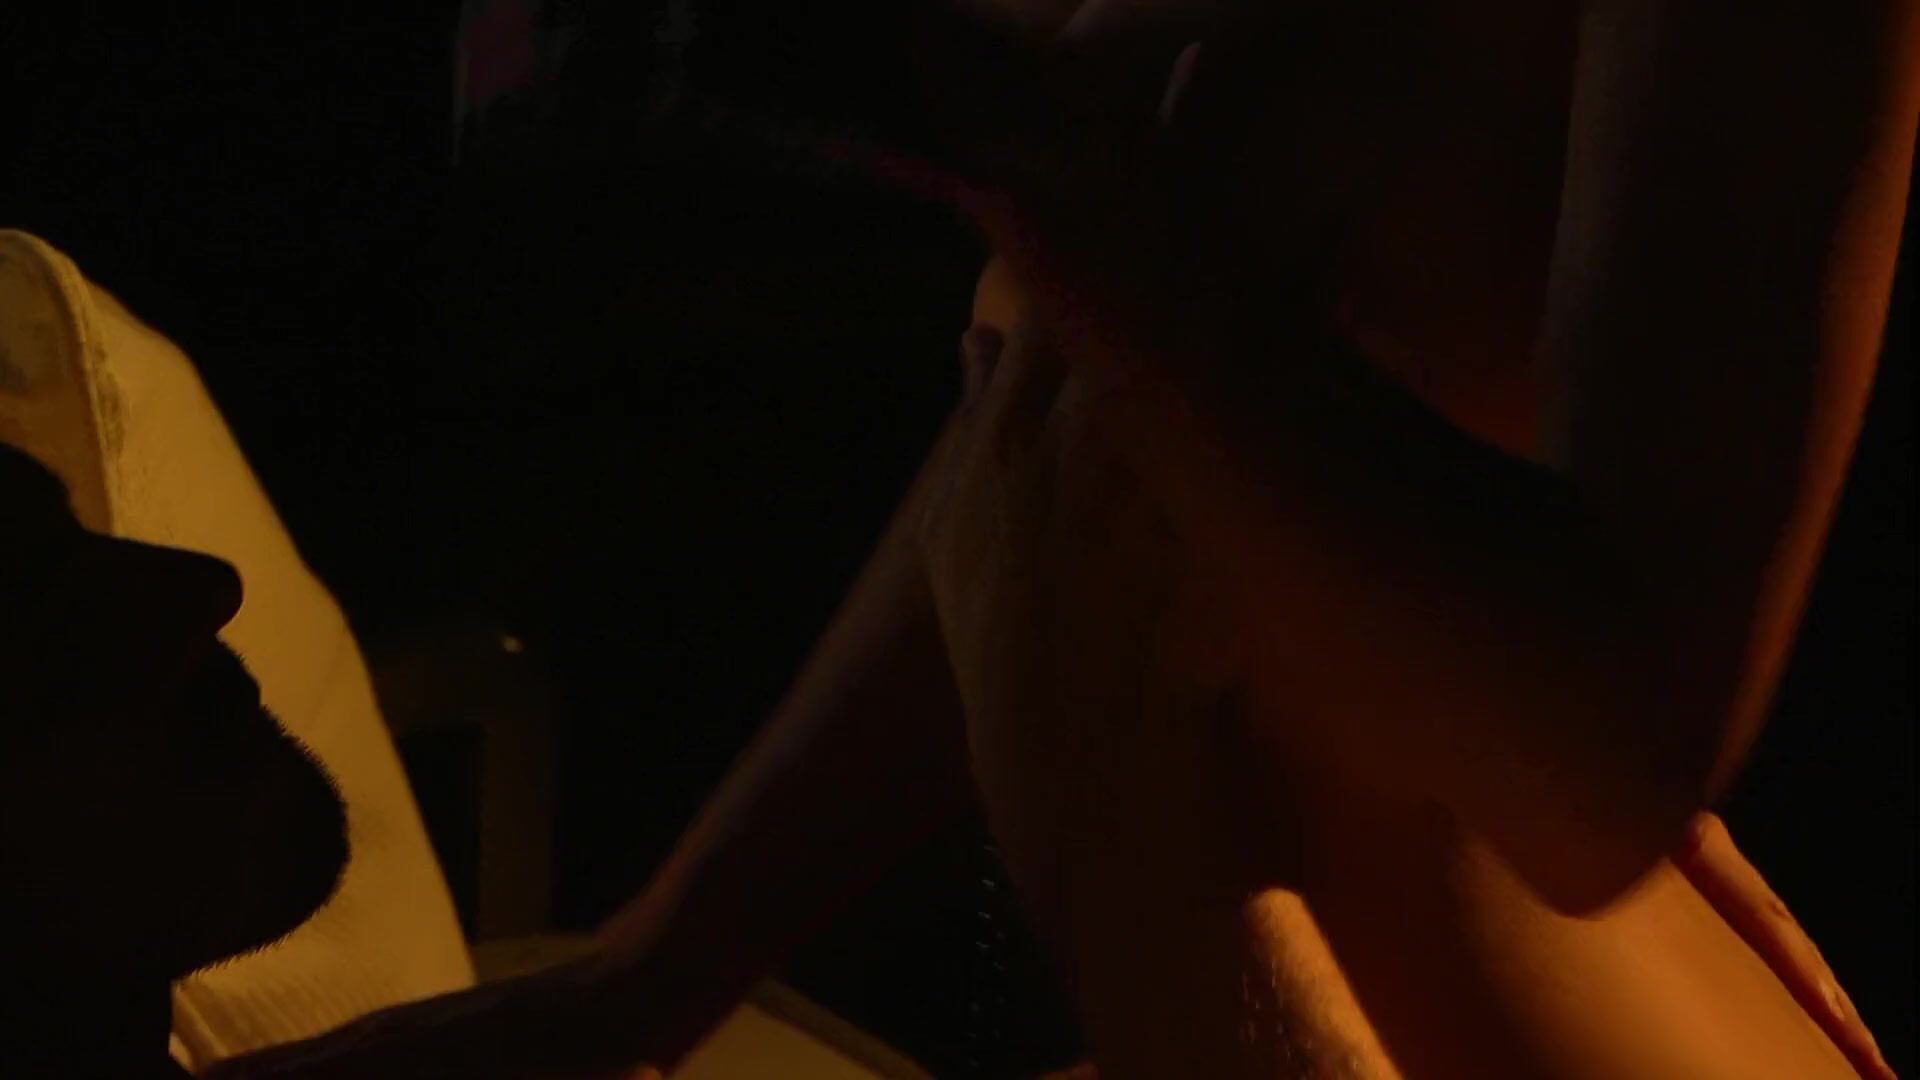 Camgirl Tempting Malena Morgan rides cock in the darkness in romantic hot movie sex scene Clip - 1